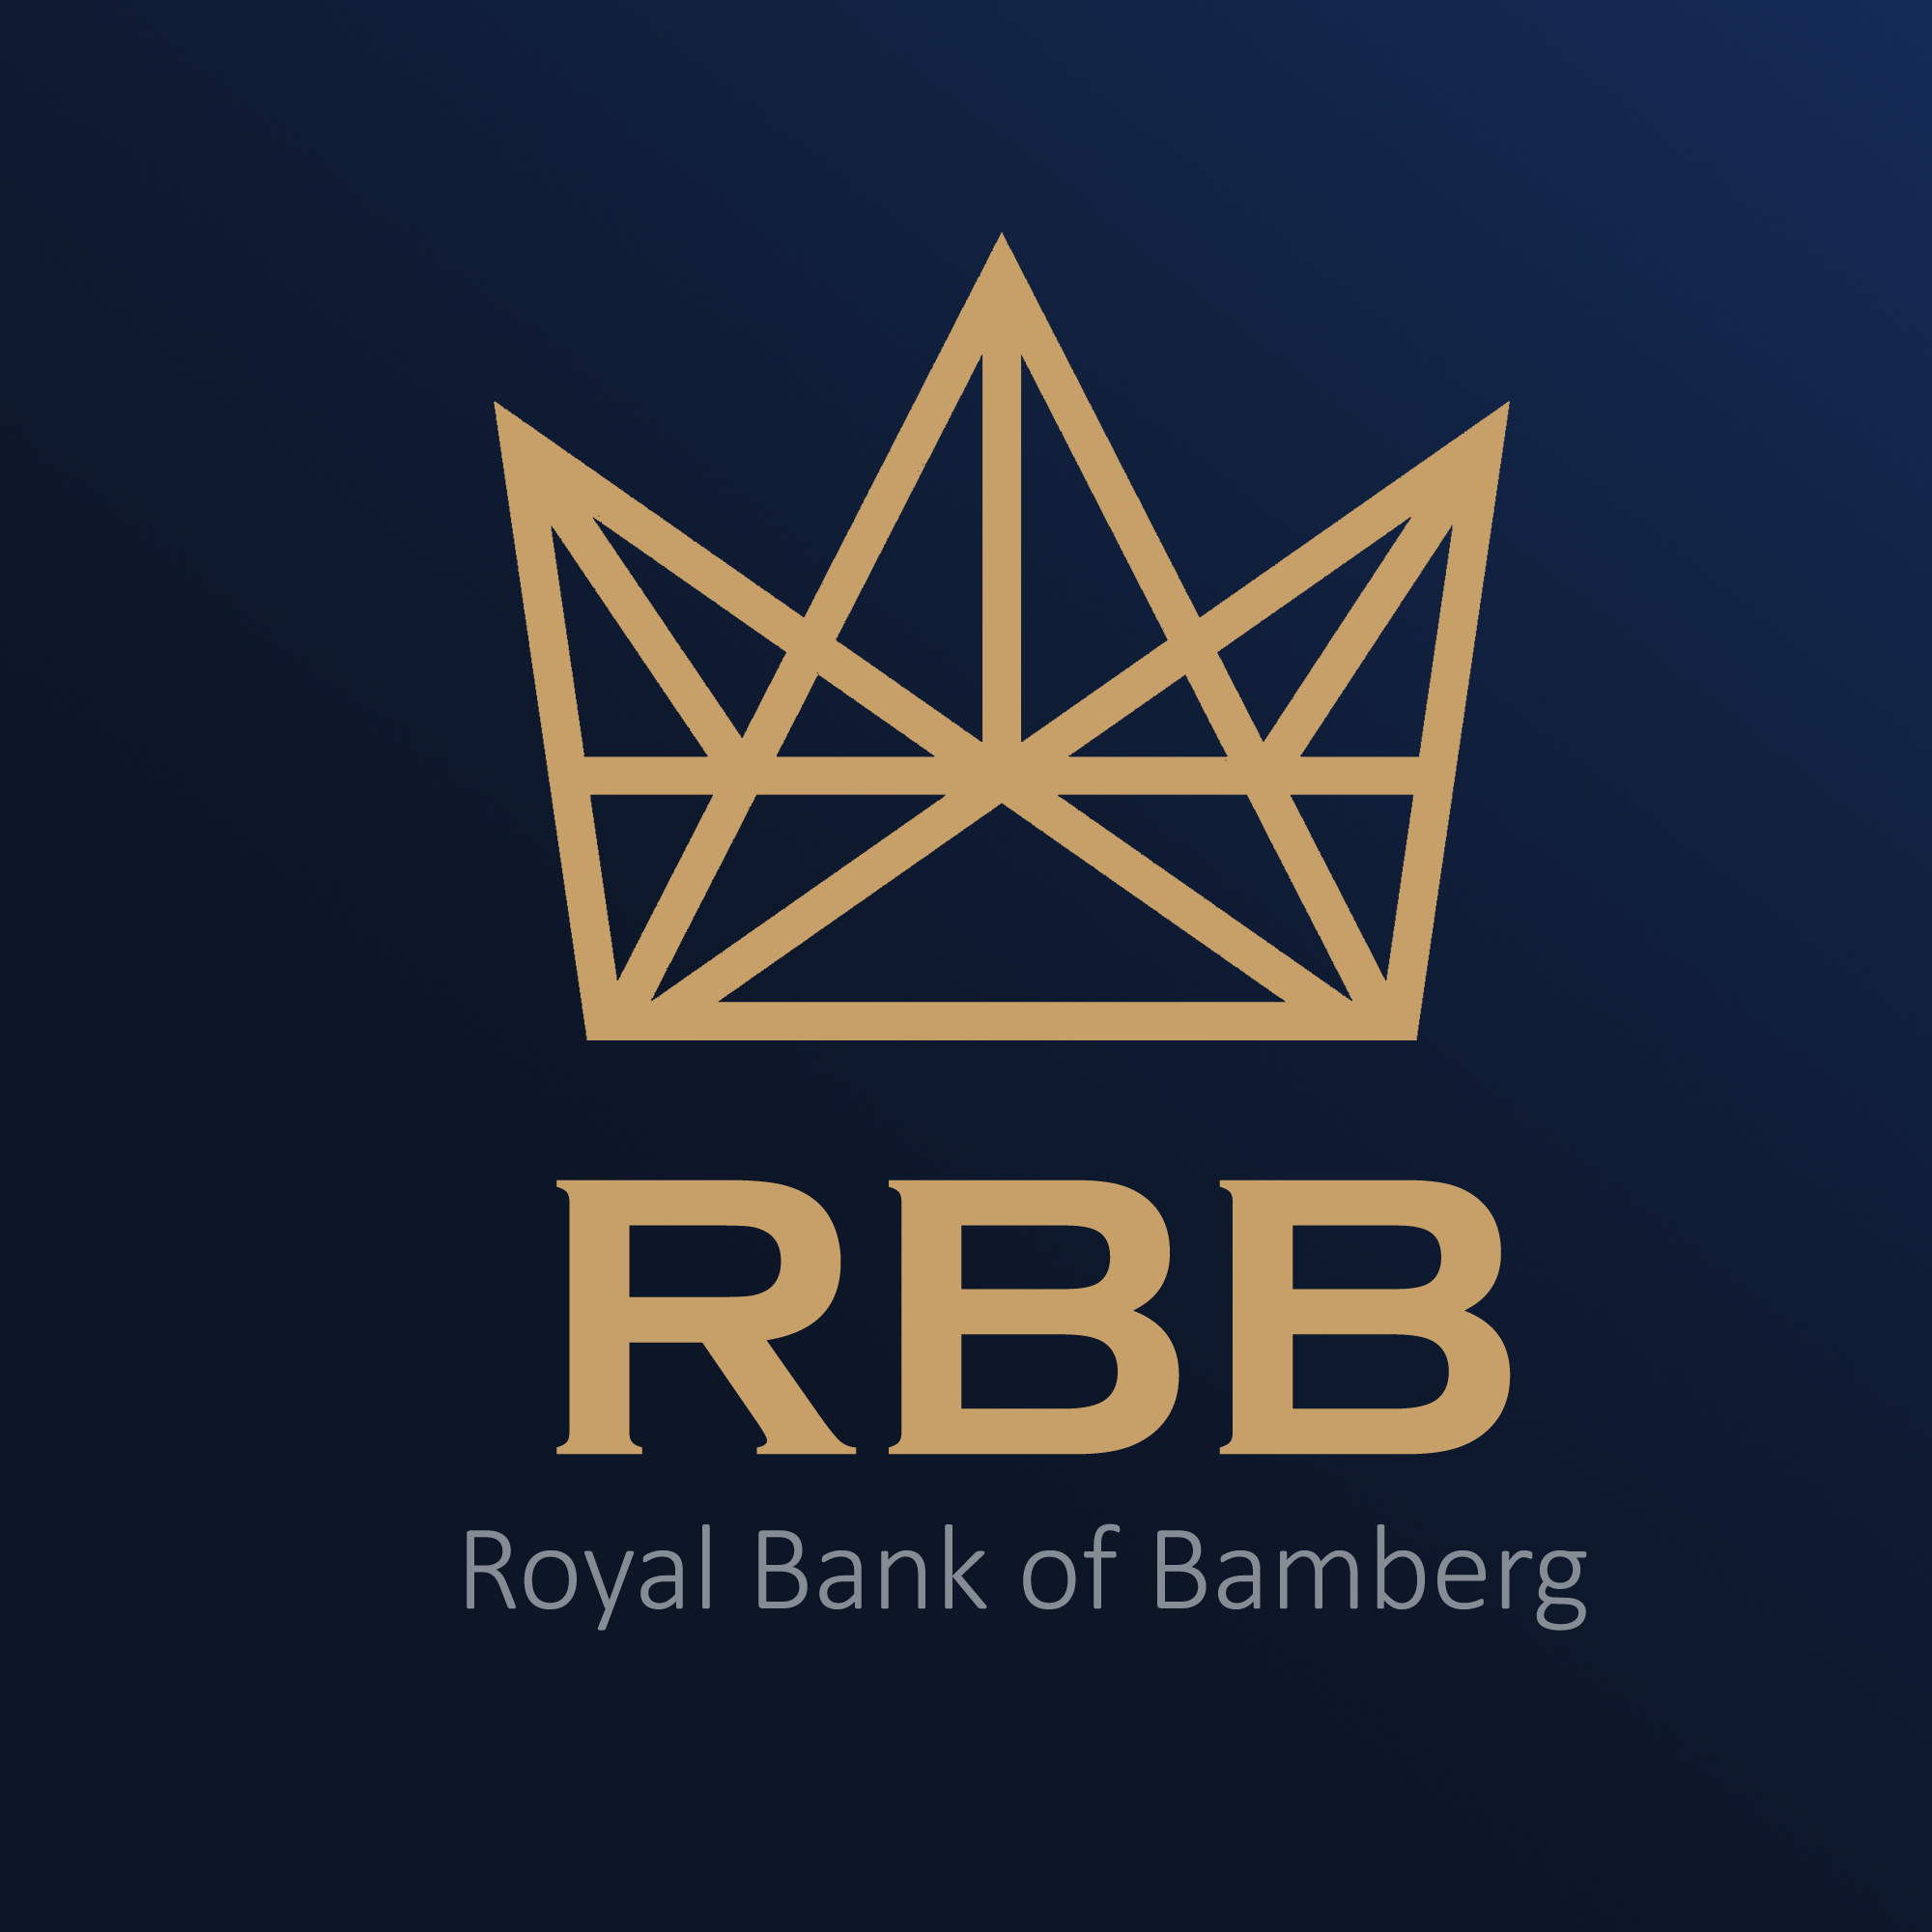 Schülerinnen der RBB – Royal Bank of Bamberg, eine Bank, die verbindet.